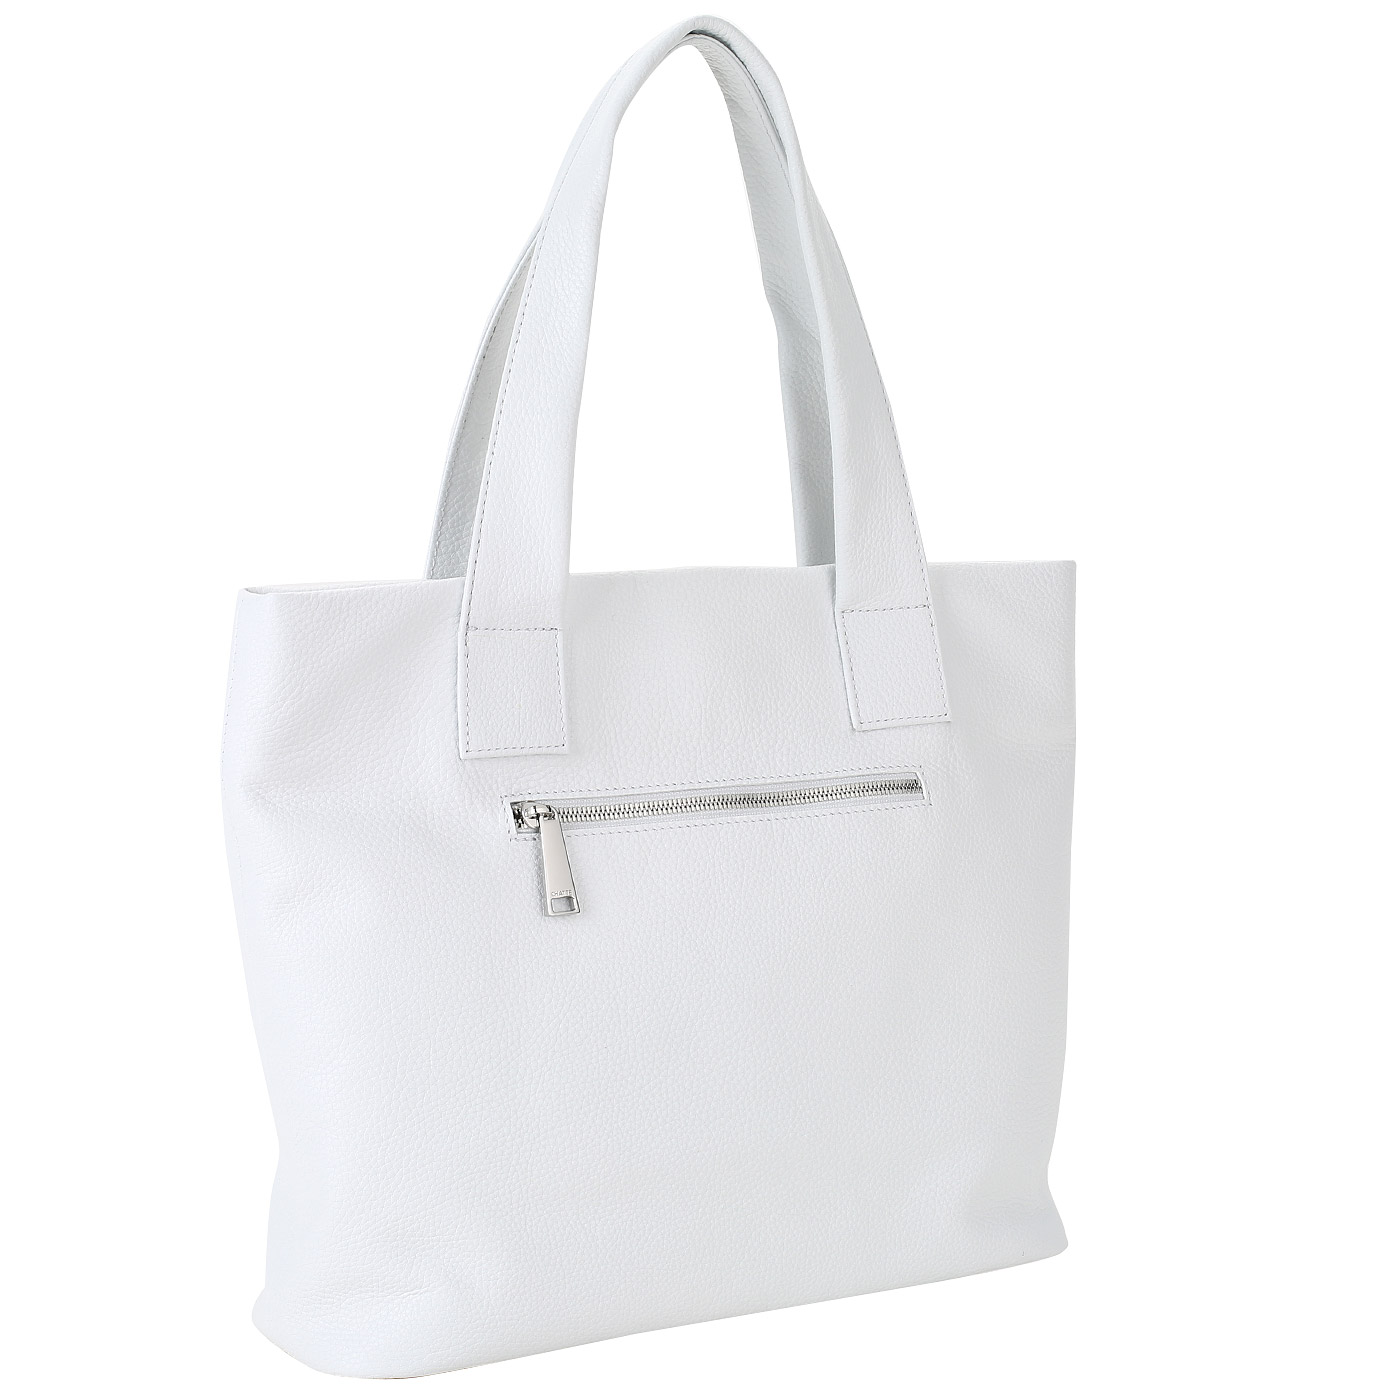 Женская сумка из белой кожи Chatte 